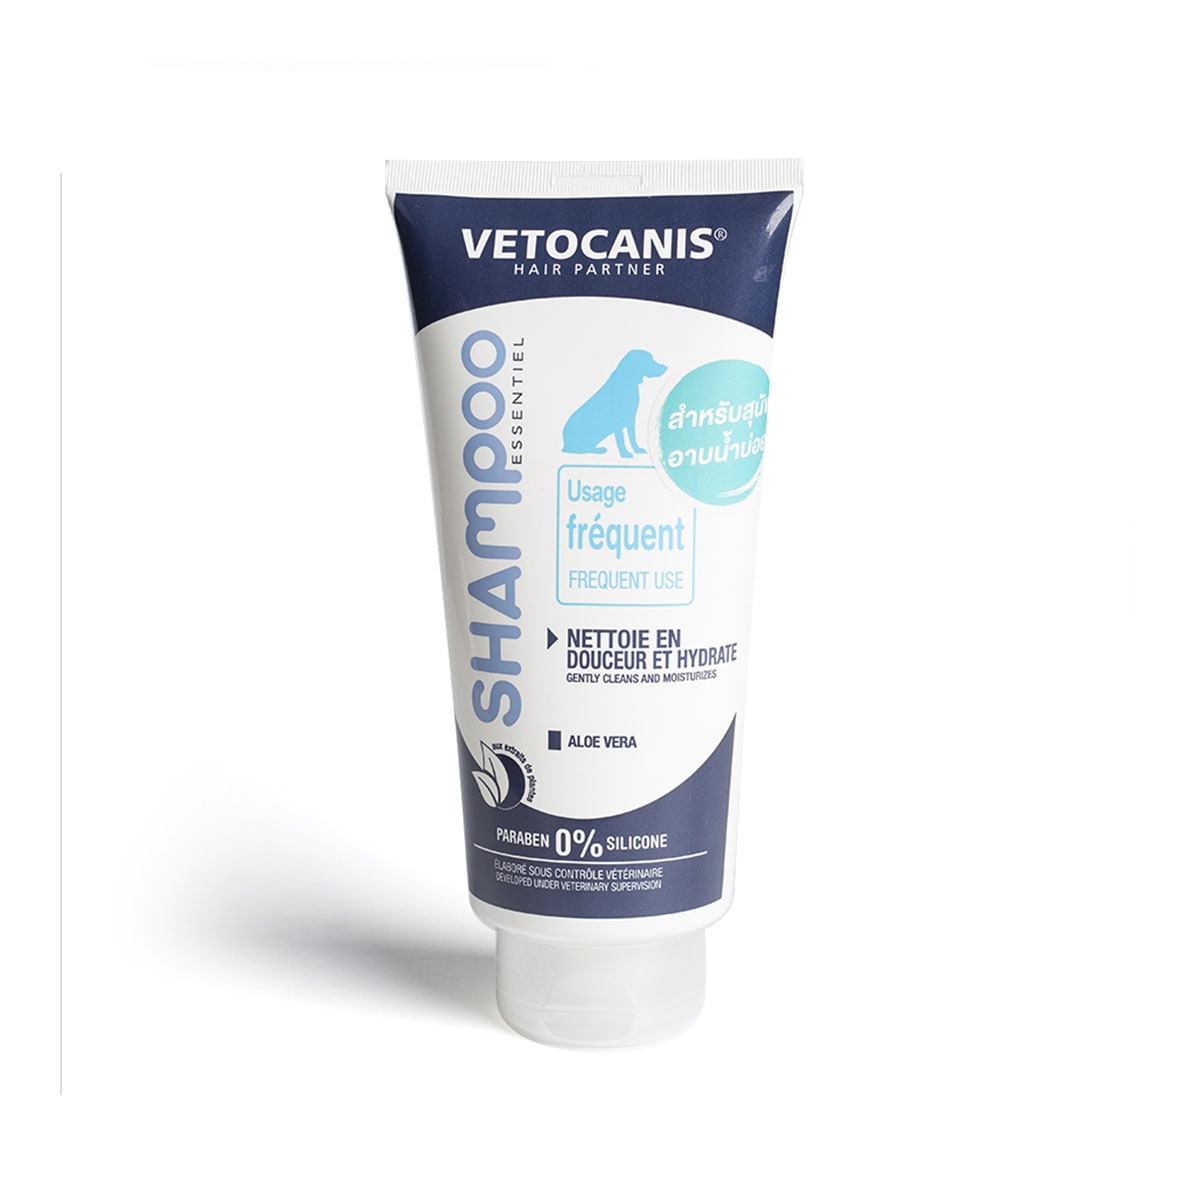 Vetocanis เวทโตเคนิส แชมพู สำหรับสุนัขอาบน้ำบ่อย สูตรสำหรับสุนัขอาบน้ำบ่อย 300 ml_1